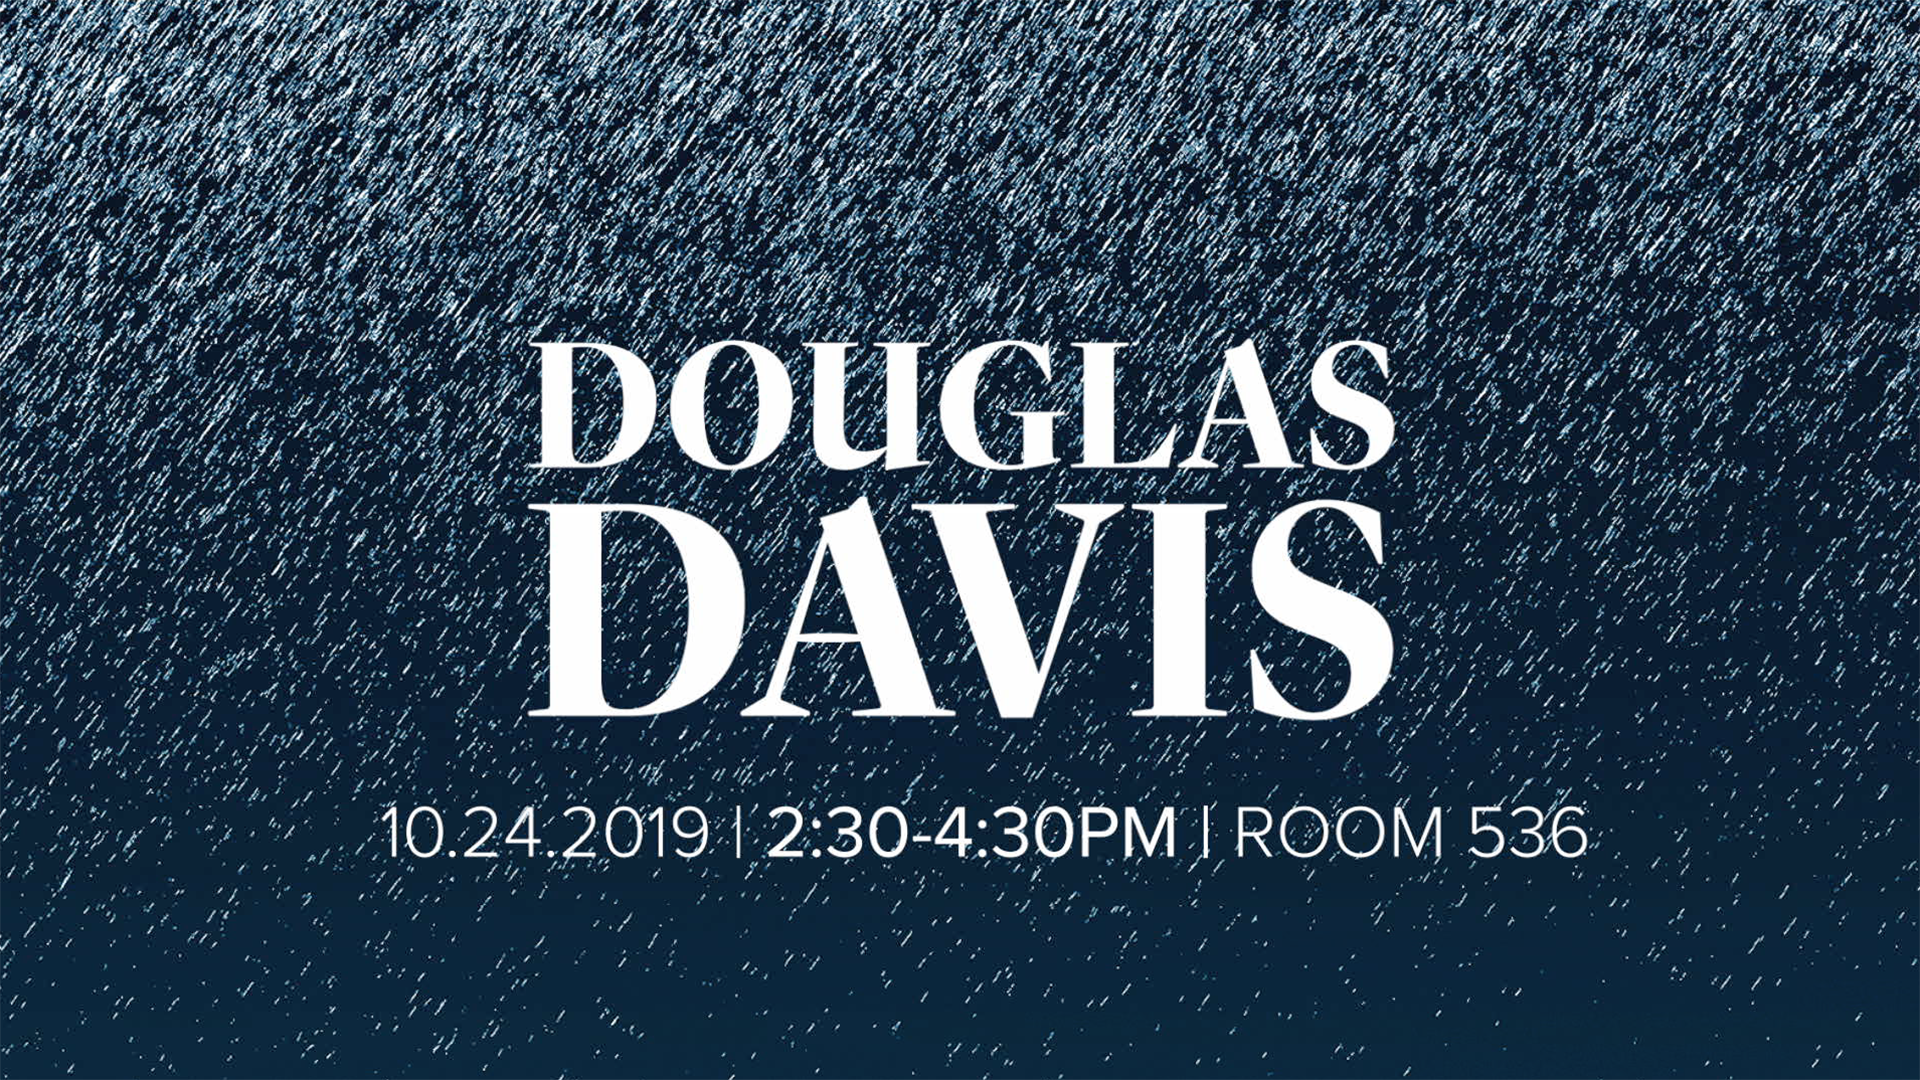 Douglas Davis guest lecture